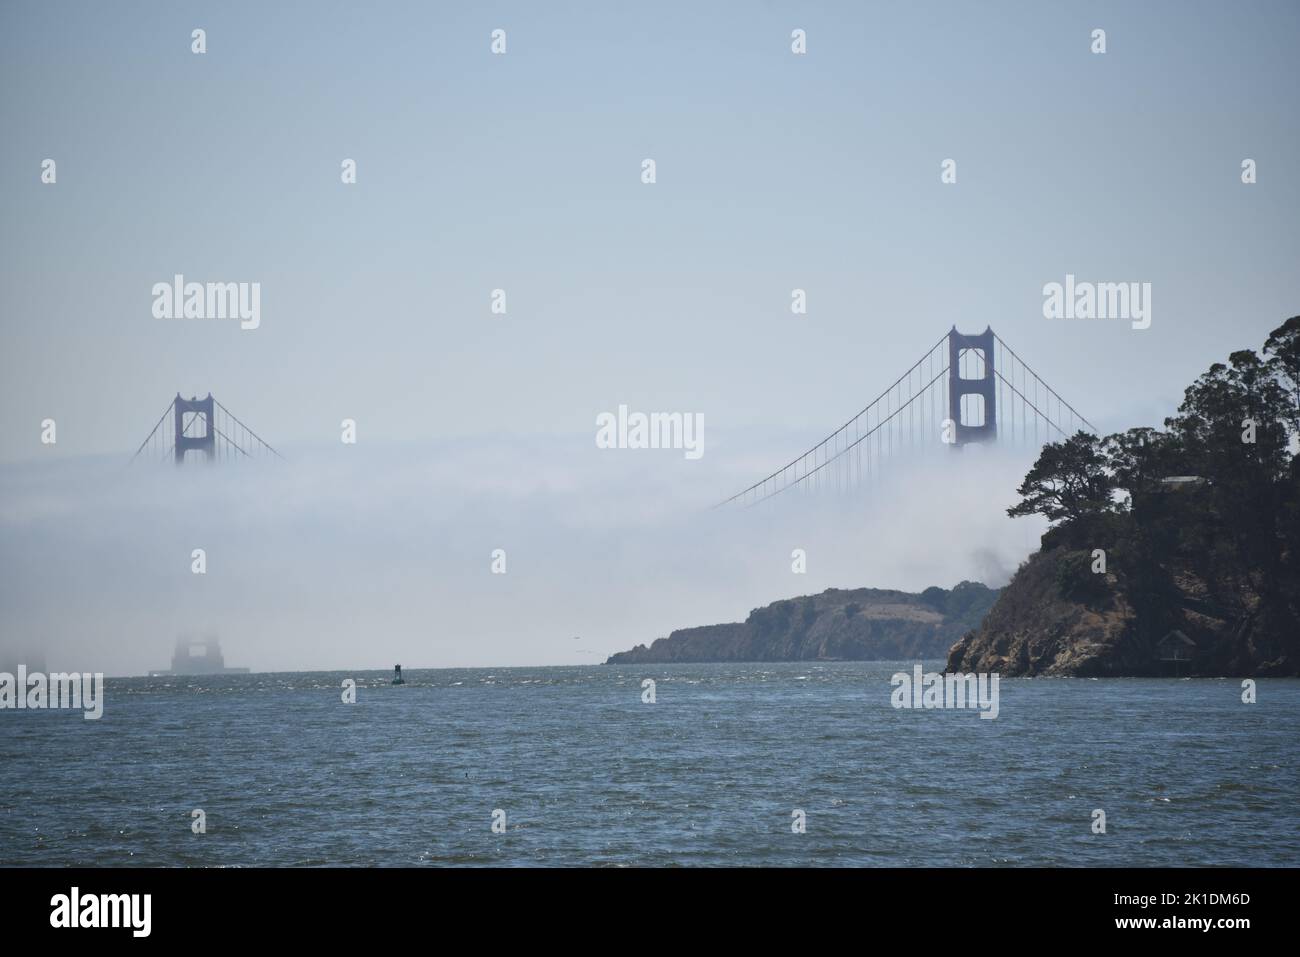 California- San Francisco- Vista panorámica de gran formato del empañado puente Golden Gate visto desde el otro lado de la bahía en el condado de Marin. Foto de stock